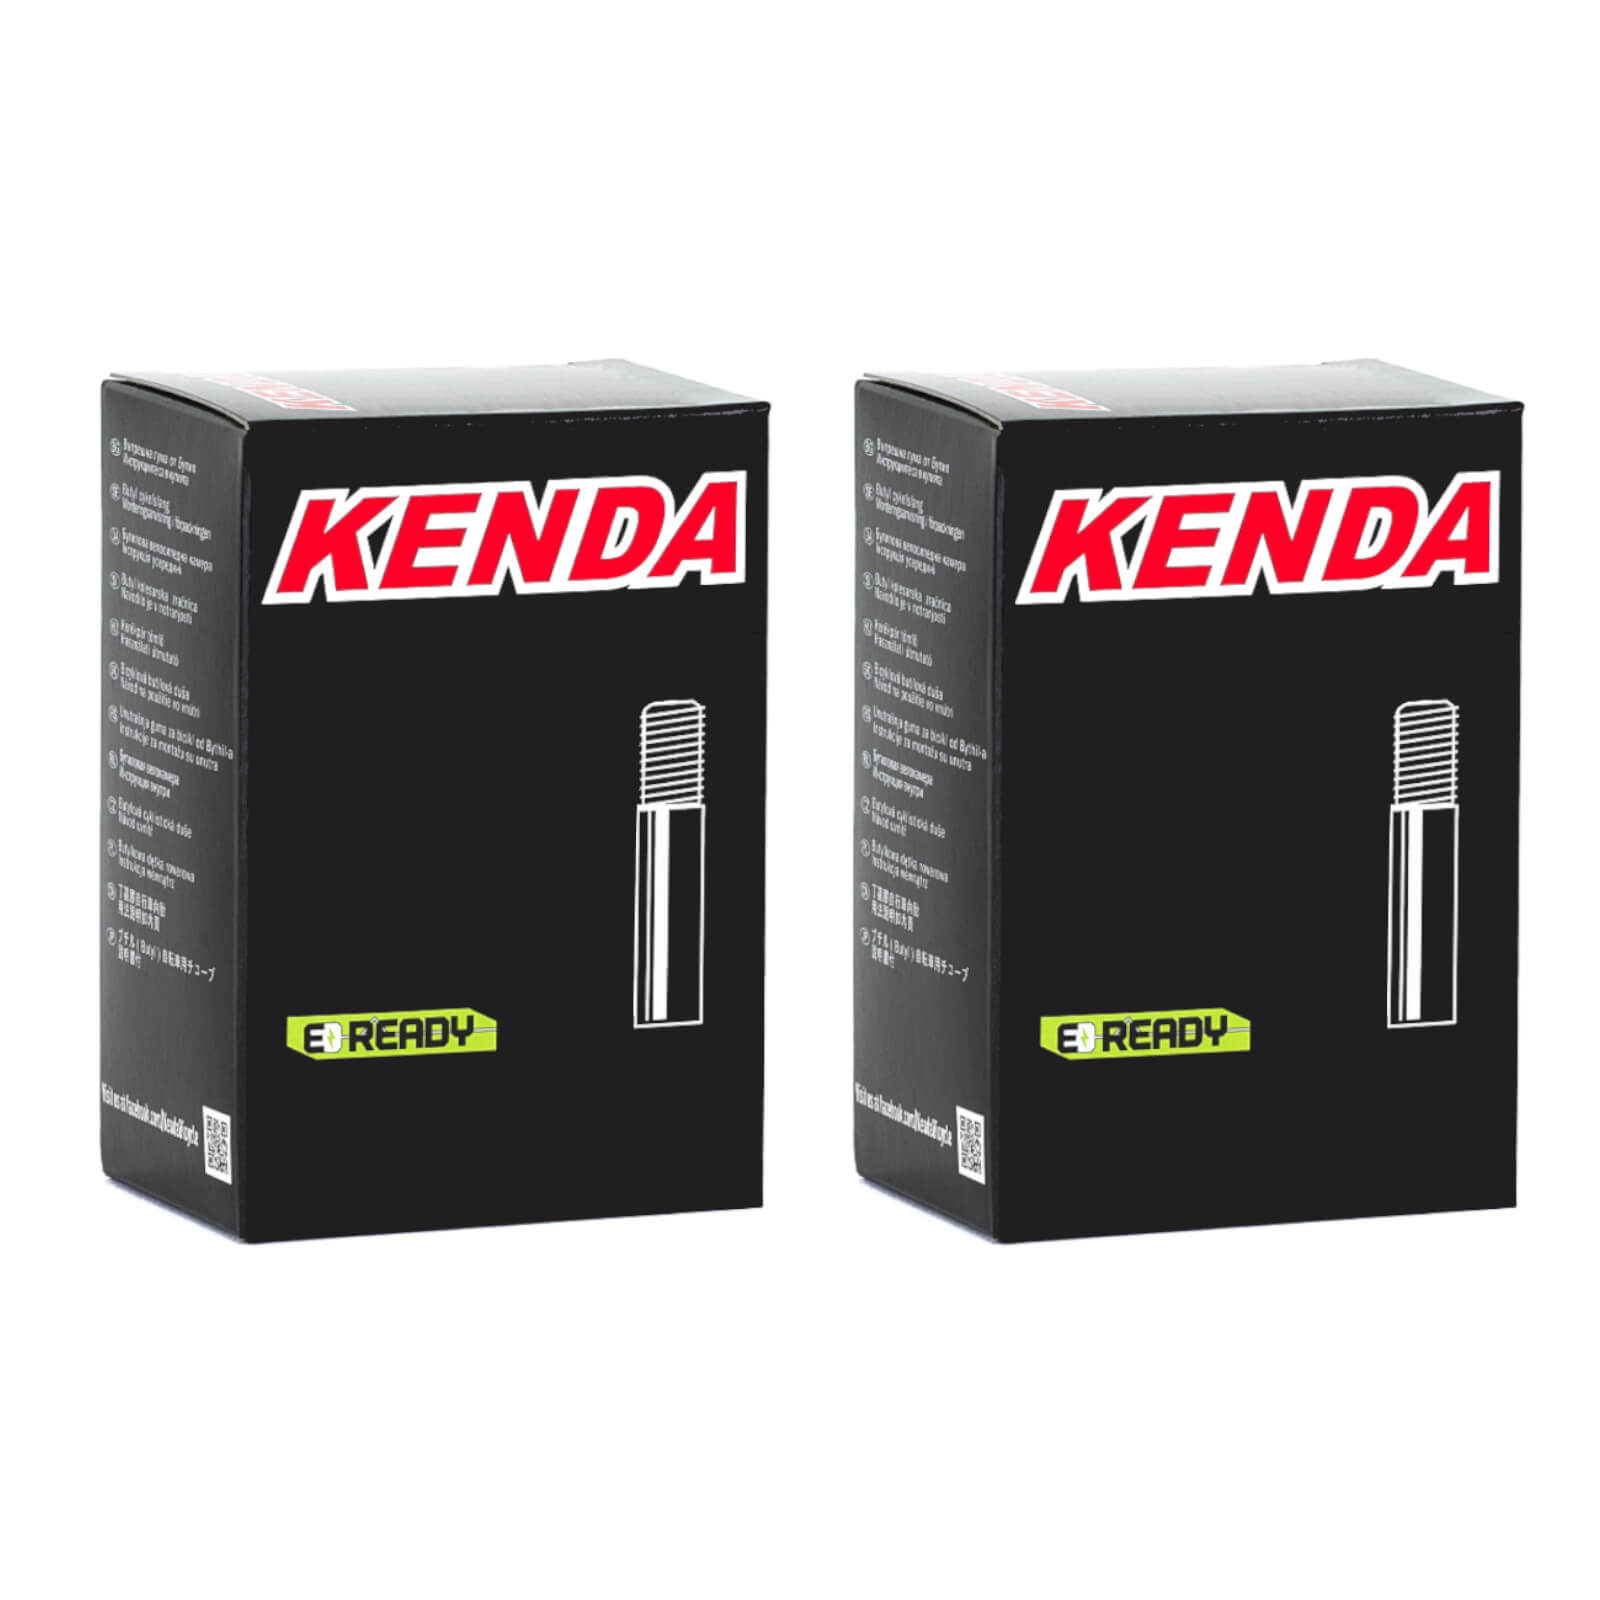 Kenda 26x2.4-2.8" 26 Inch Schrader Valve Bike Inner Tube Pack of 2